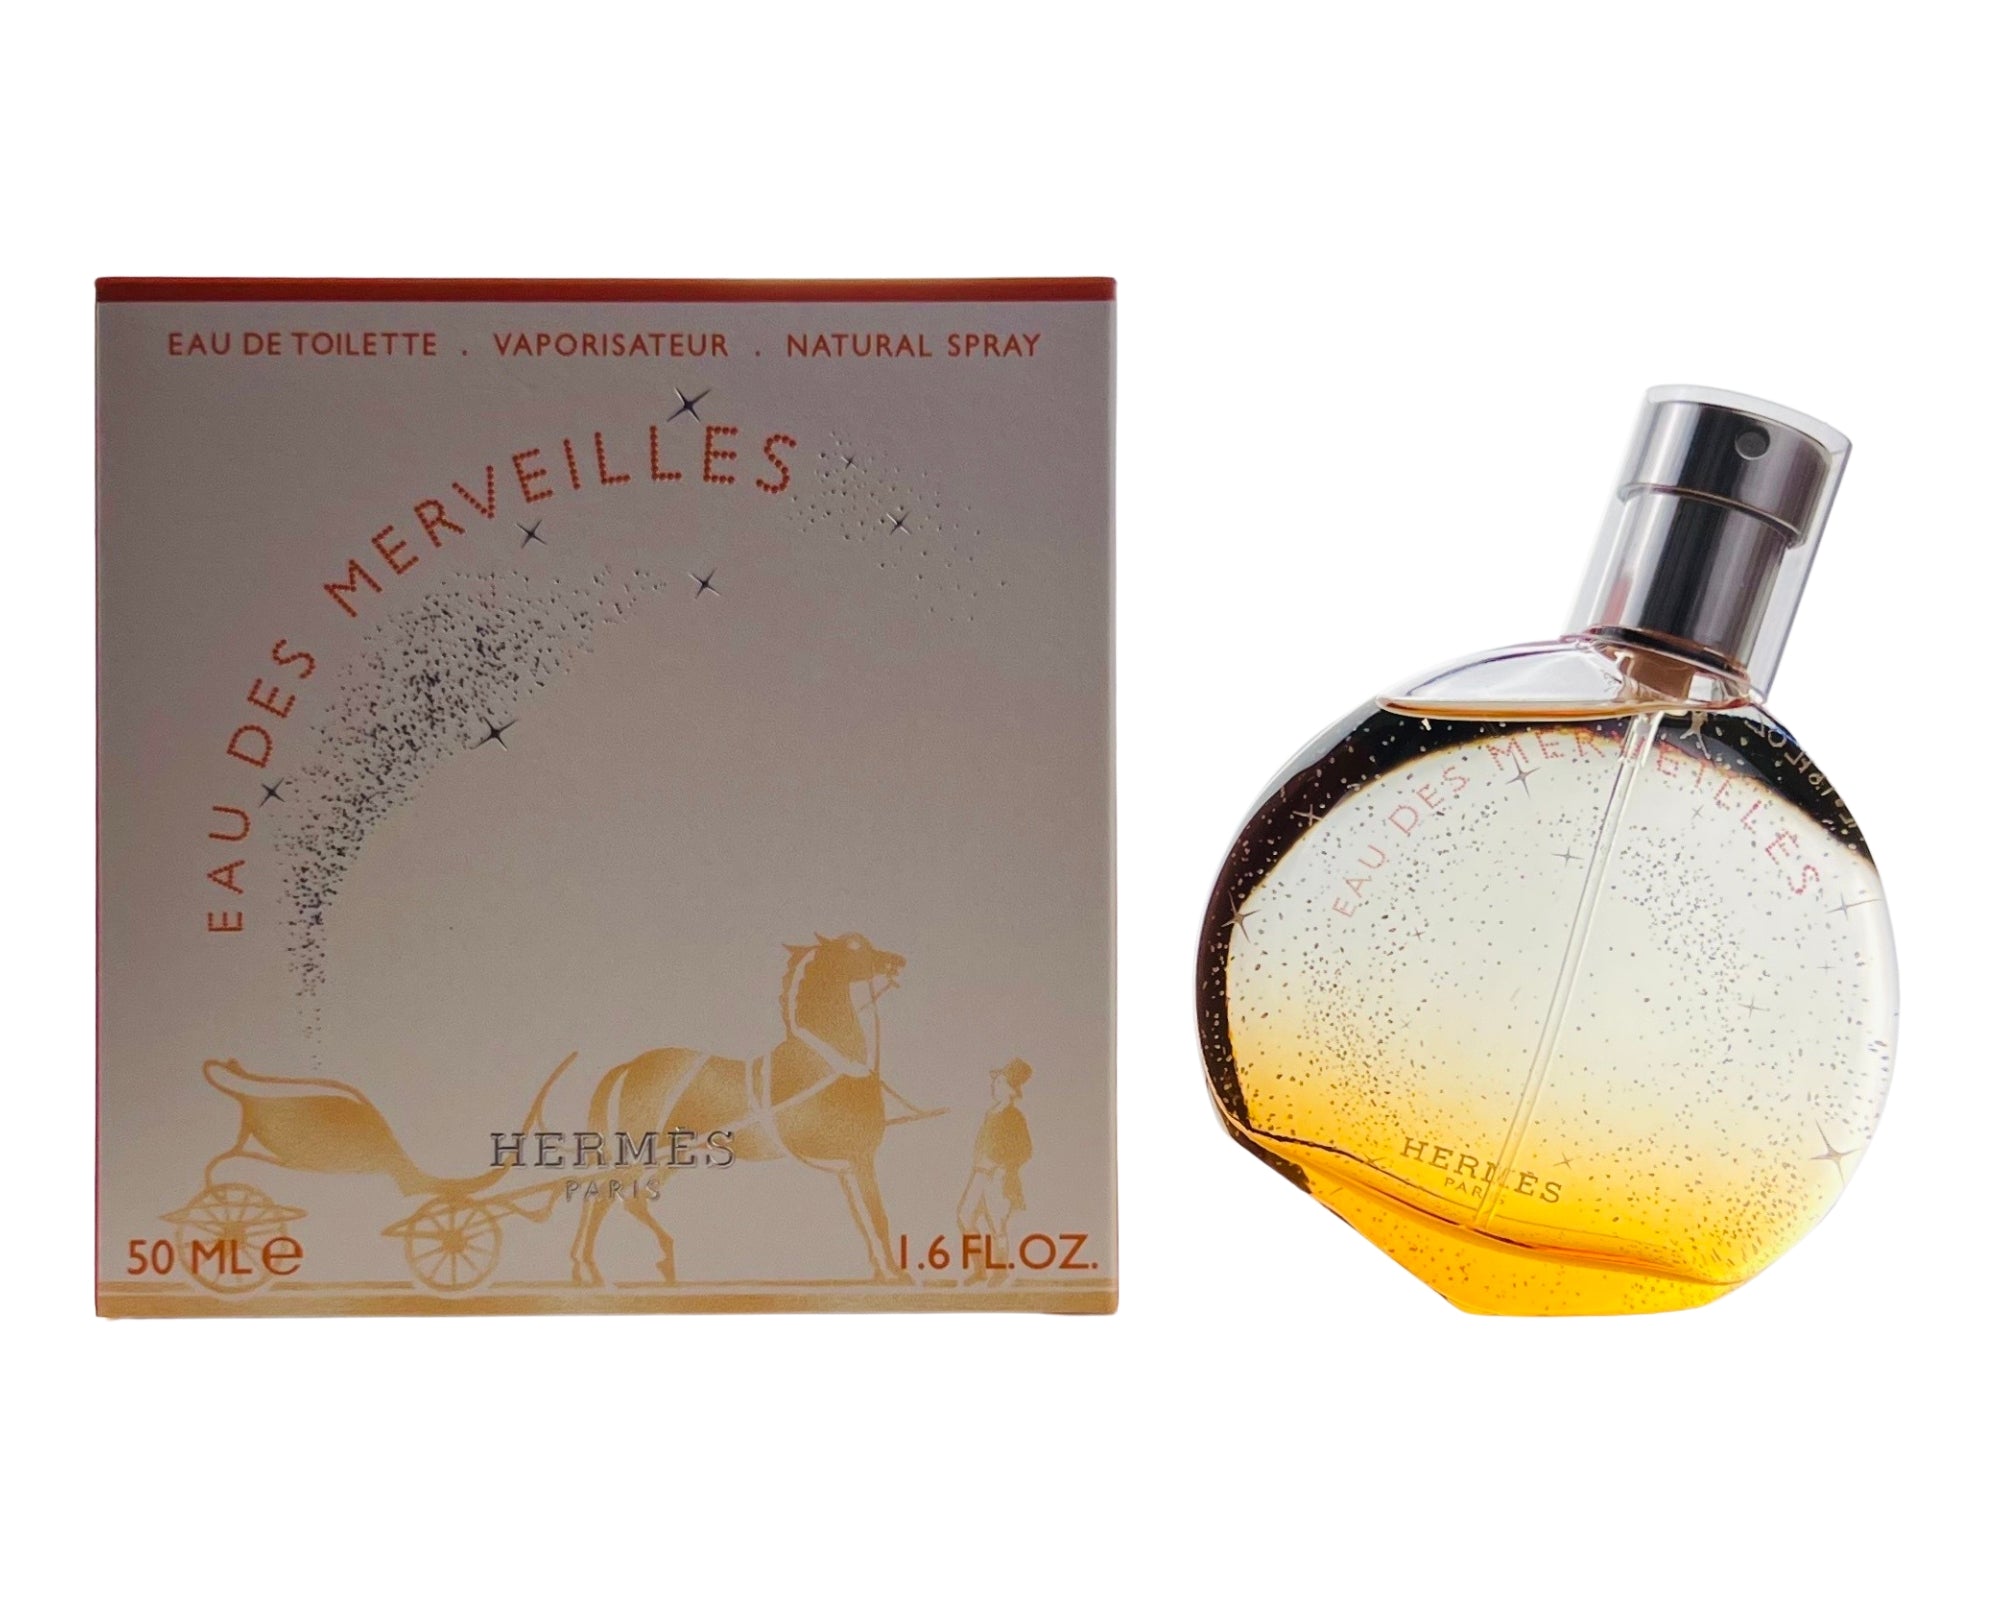 Eau Des Merveilles Perfume Eau De Toilette by Hermes